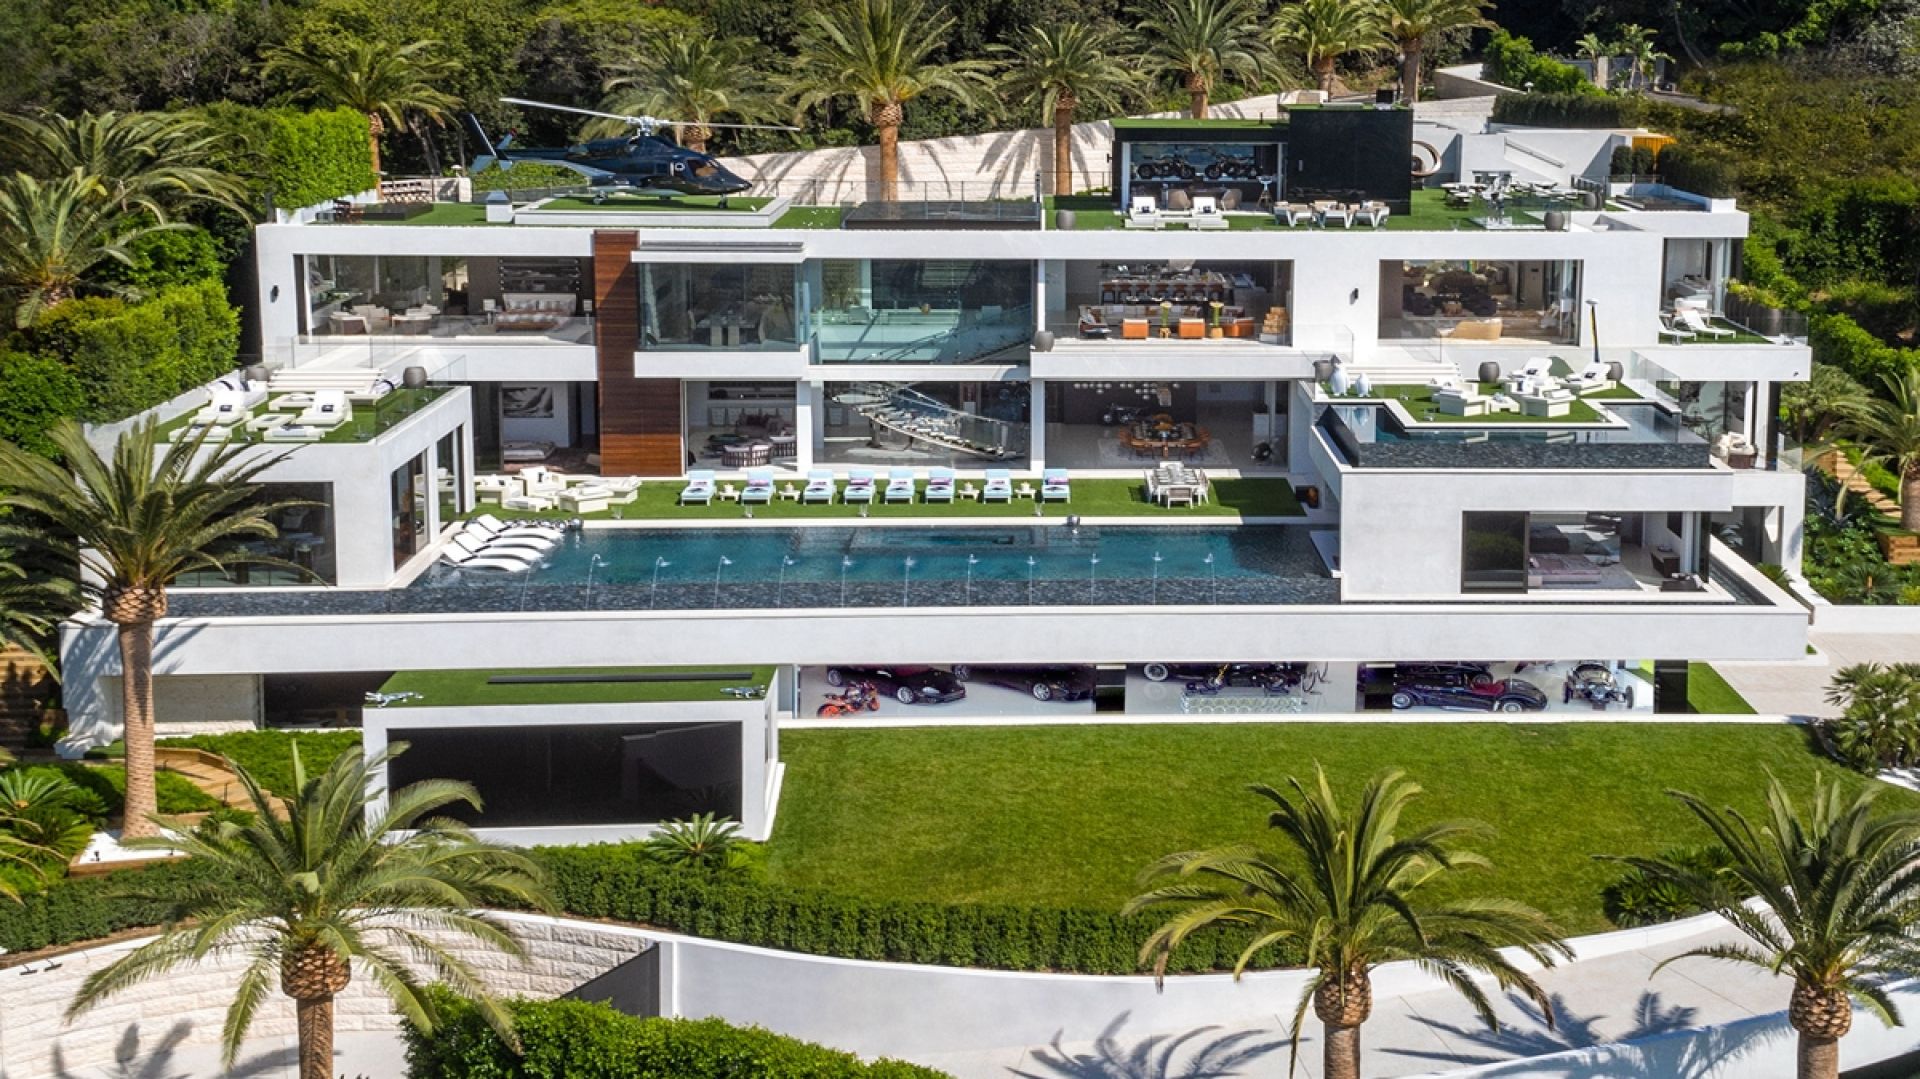 Piękny, nowoczesny dom za, bagatela, 150 mln dolarów